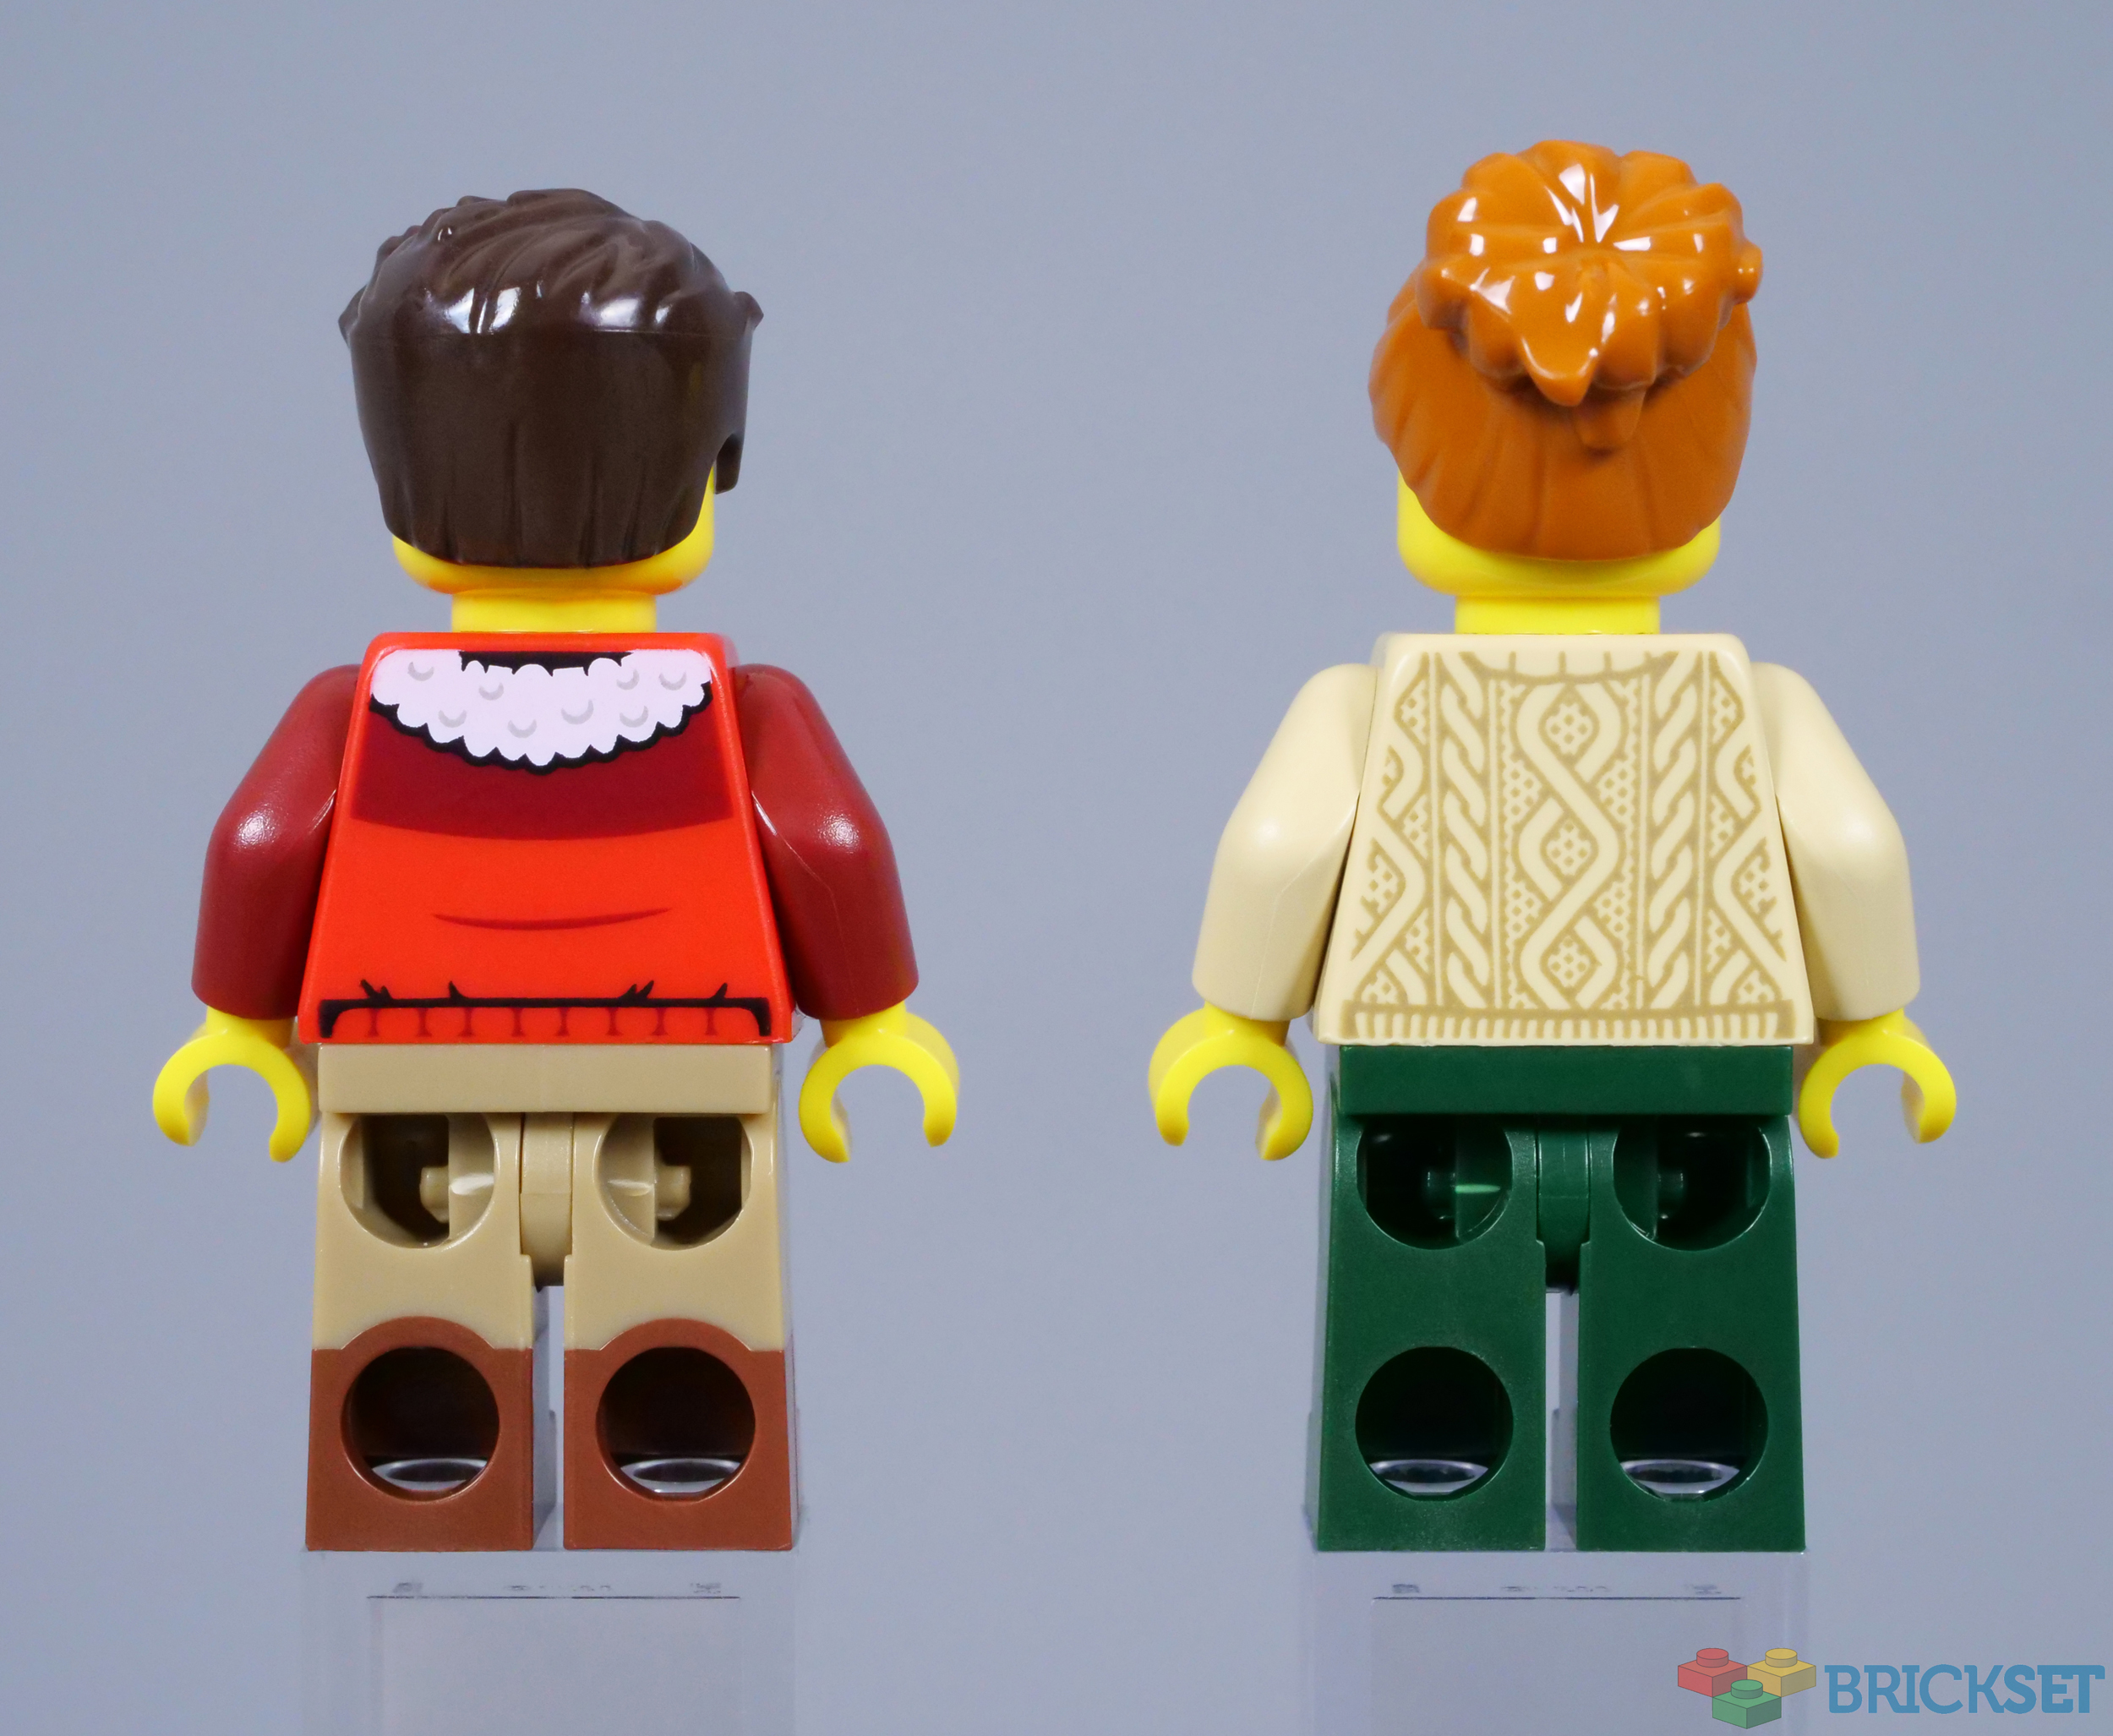 Lego 100 Pieces Reddish Brown 2x4 Plate / City Mini Figures Bulk Building  Parts